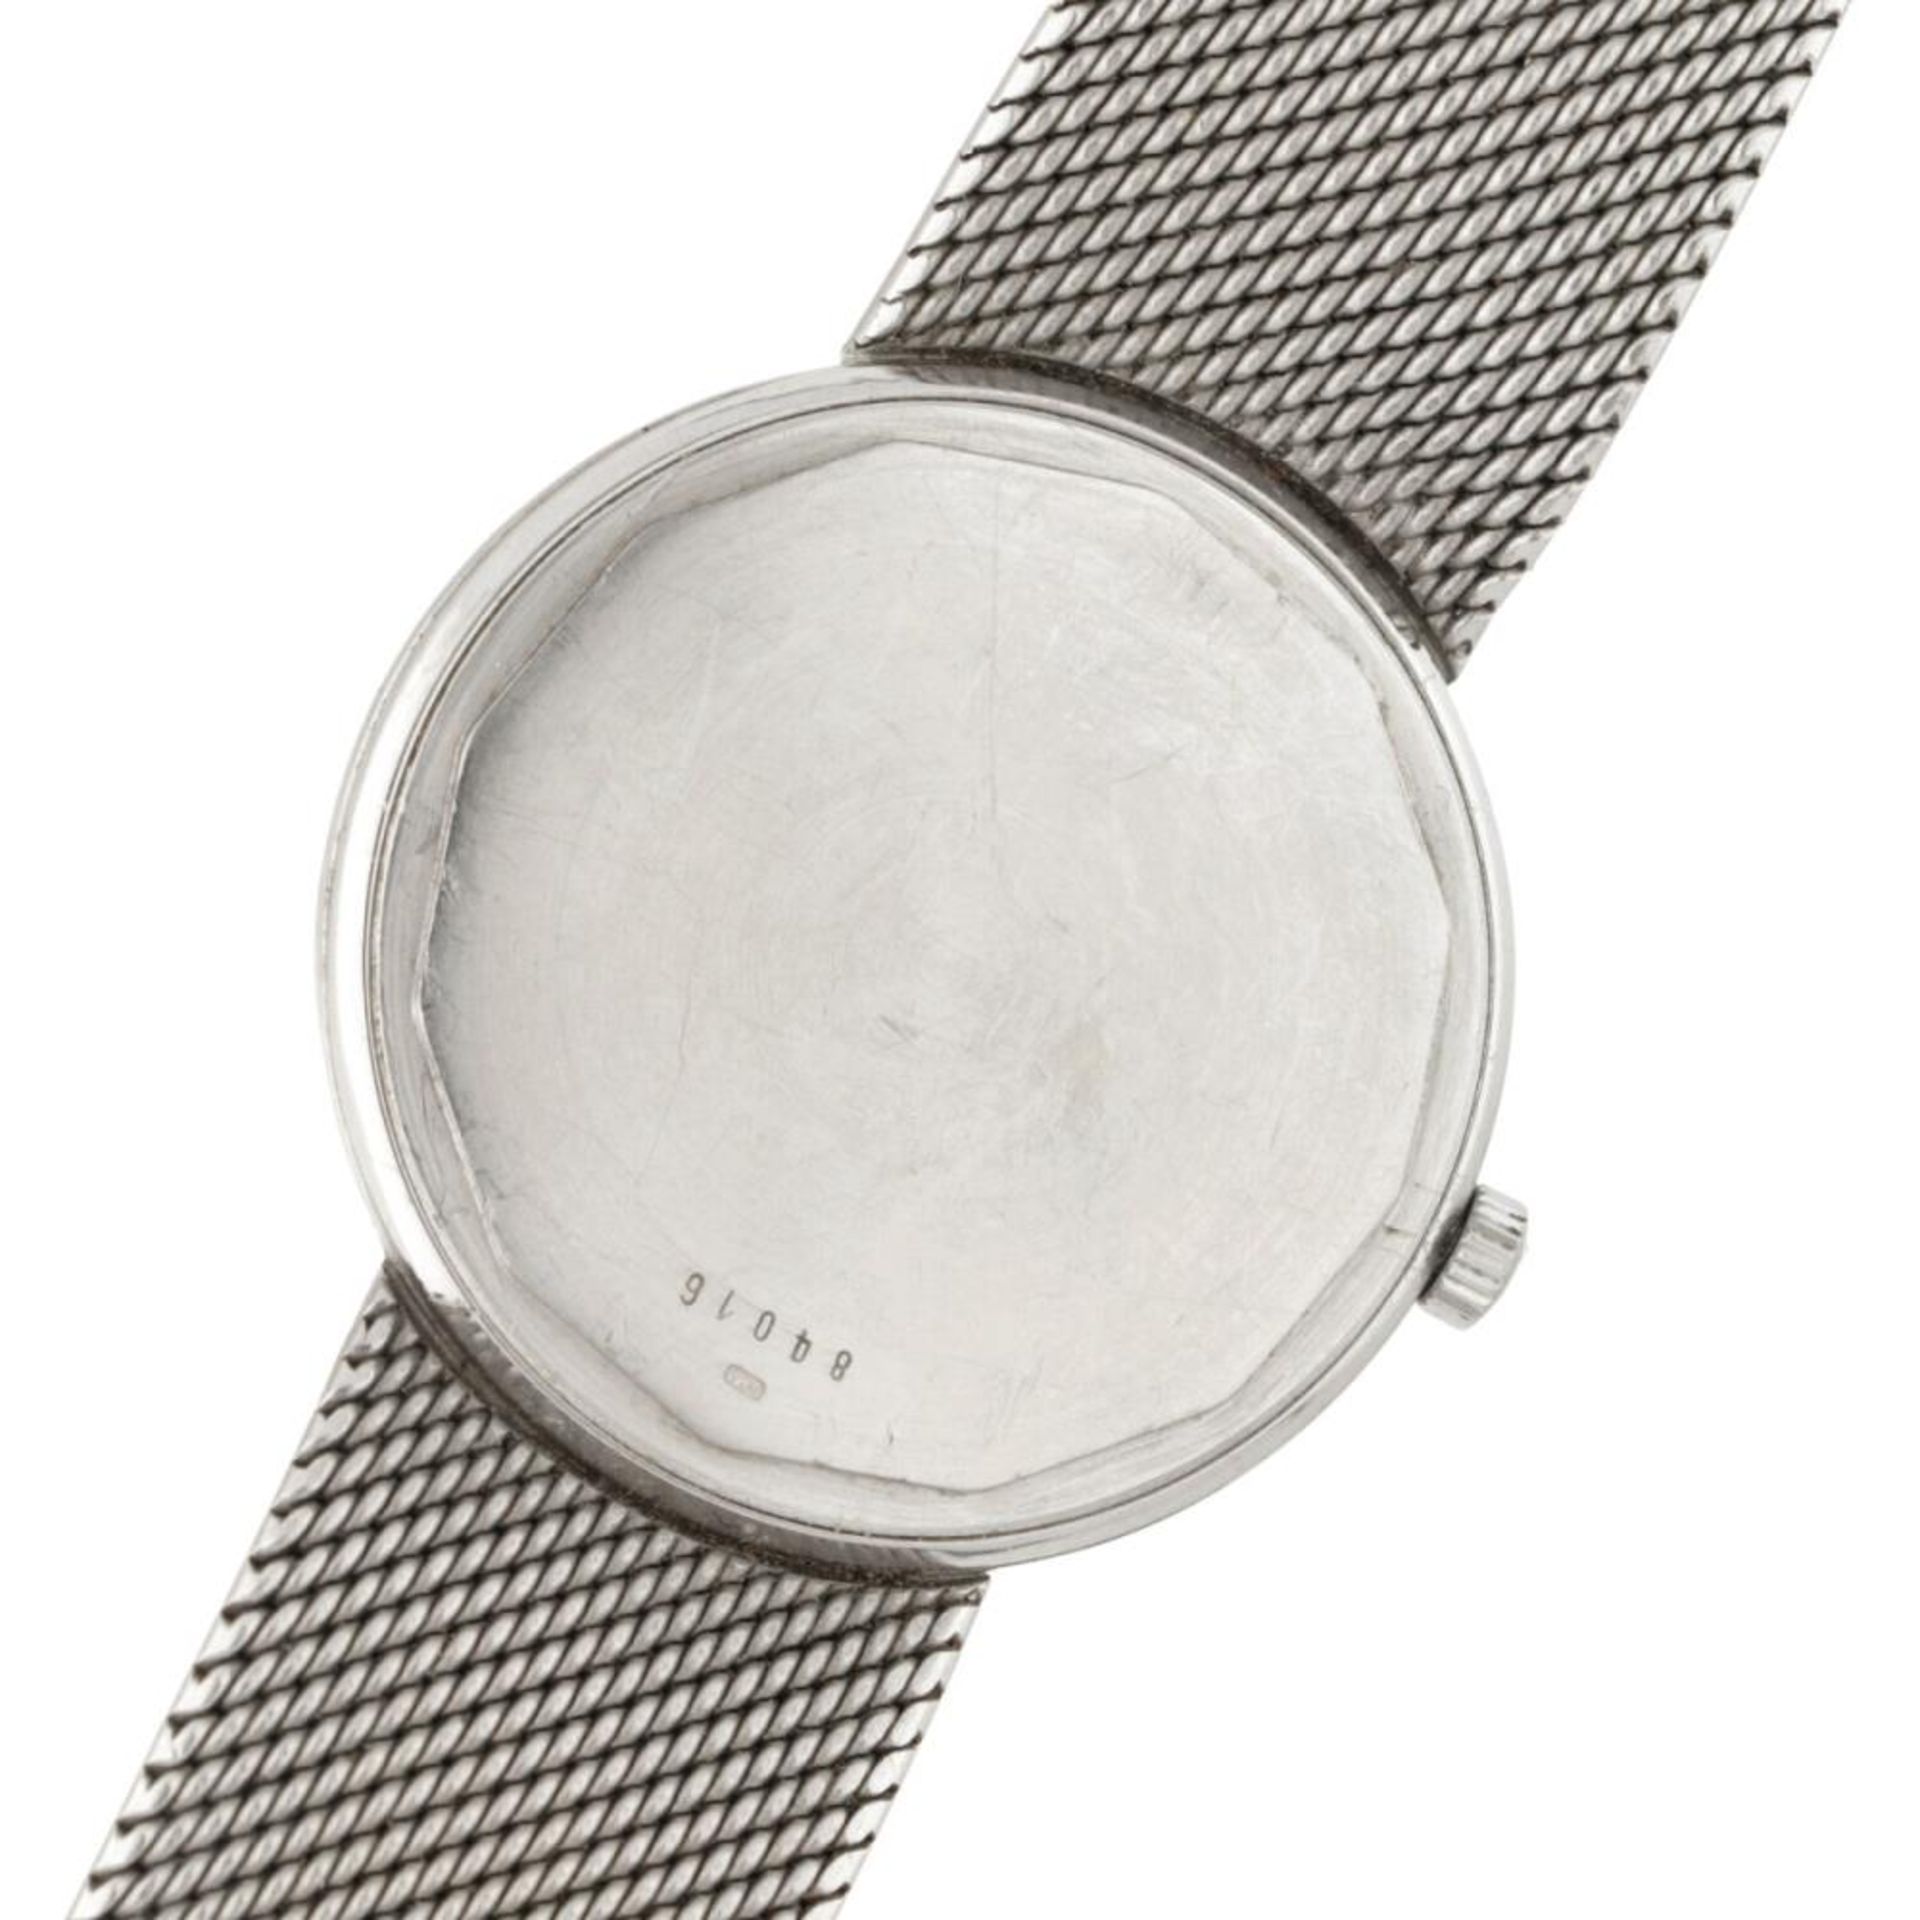 Audemars Piguet 84016 - Men's watch - approx. 1967. - Image 6 of 8